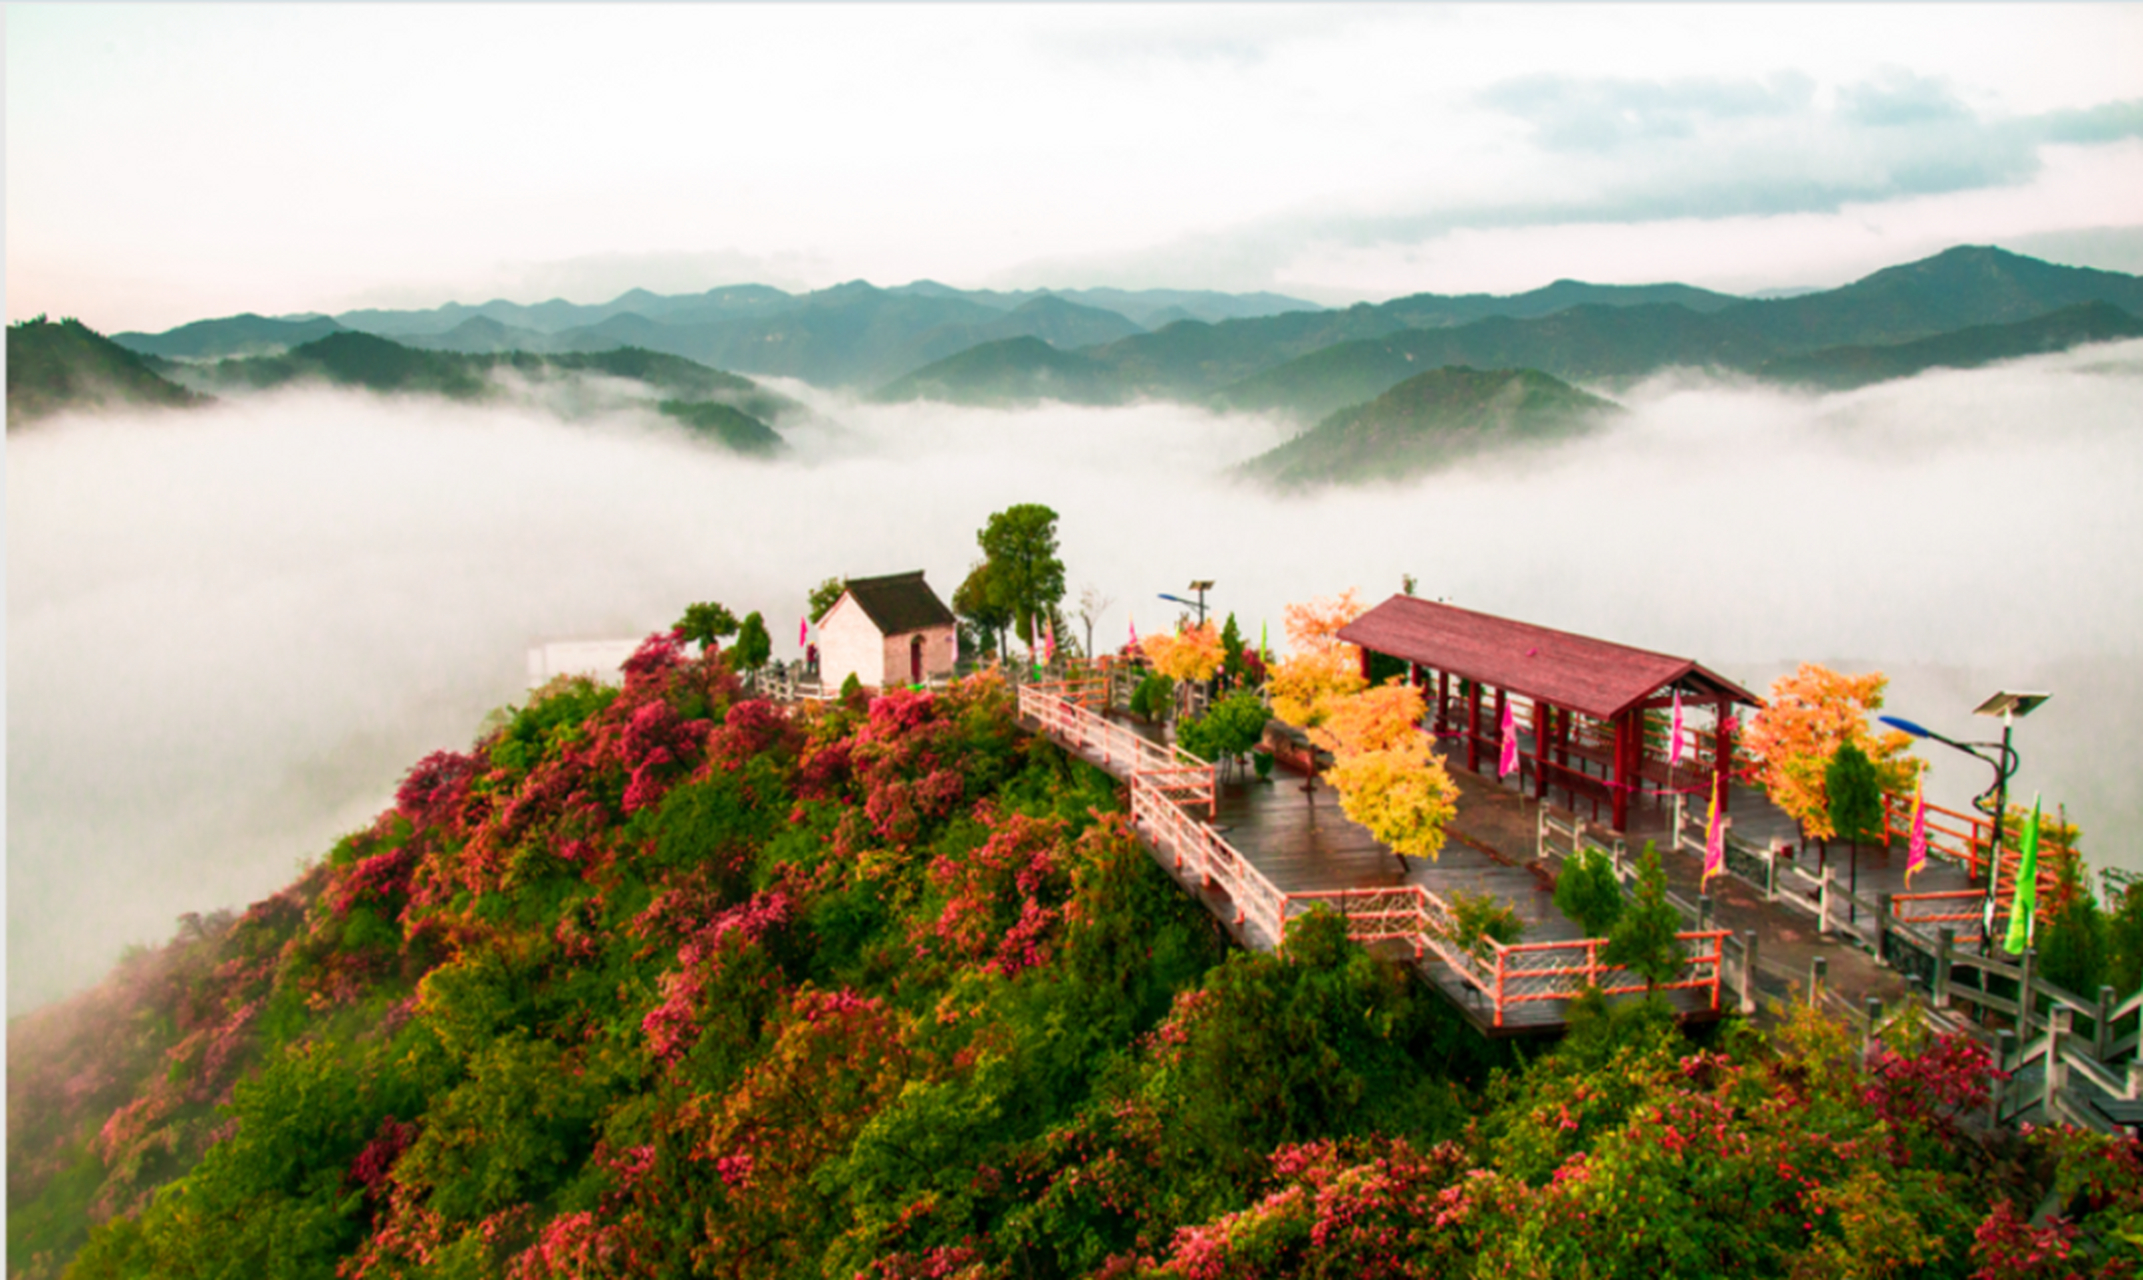 柏尖山位于河南省林州市原康镇,地处太行山山脉,山上林木生长茂盛,每